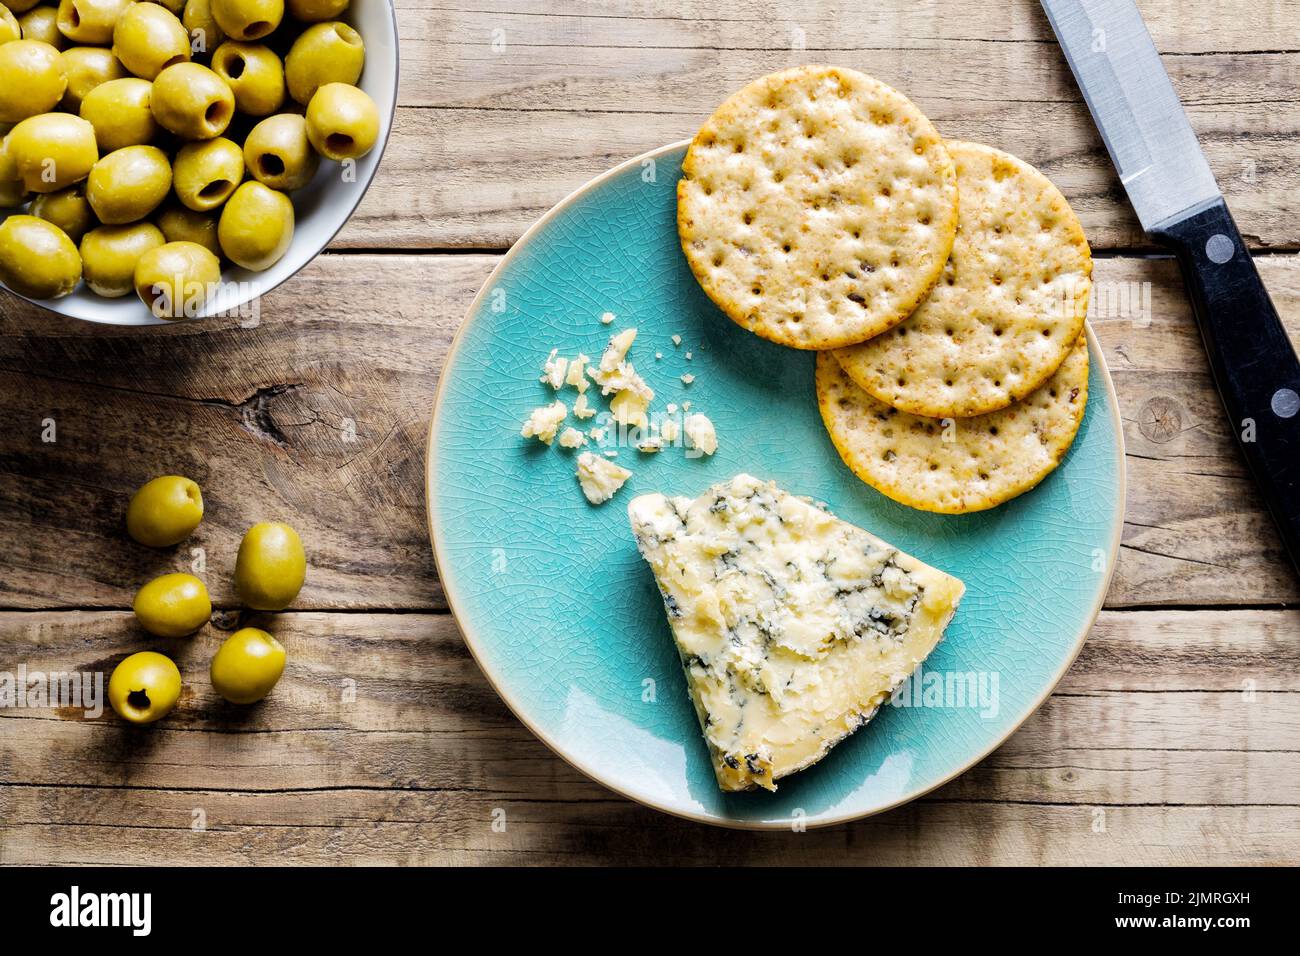 Eine Scheibe reifen Stilton-Käse auf einem Teller mit runden Weizencrackern und grünen Oliven in einer kleinen Schüssel zur Seite. Eine Portion in Wüstengröße Stockfoto